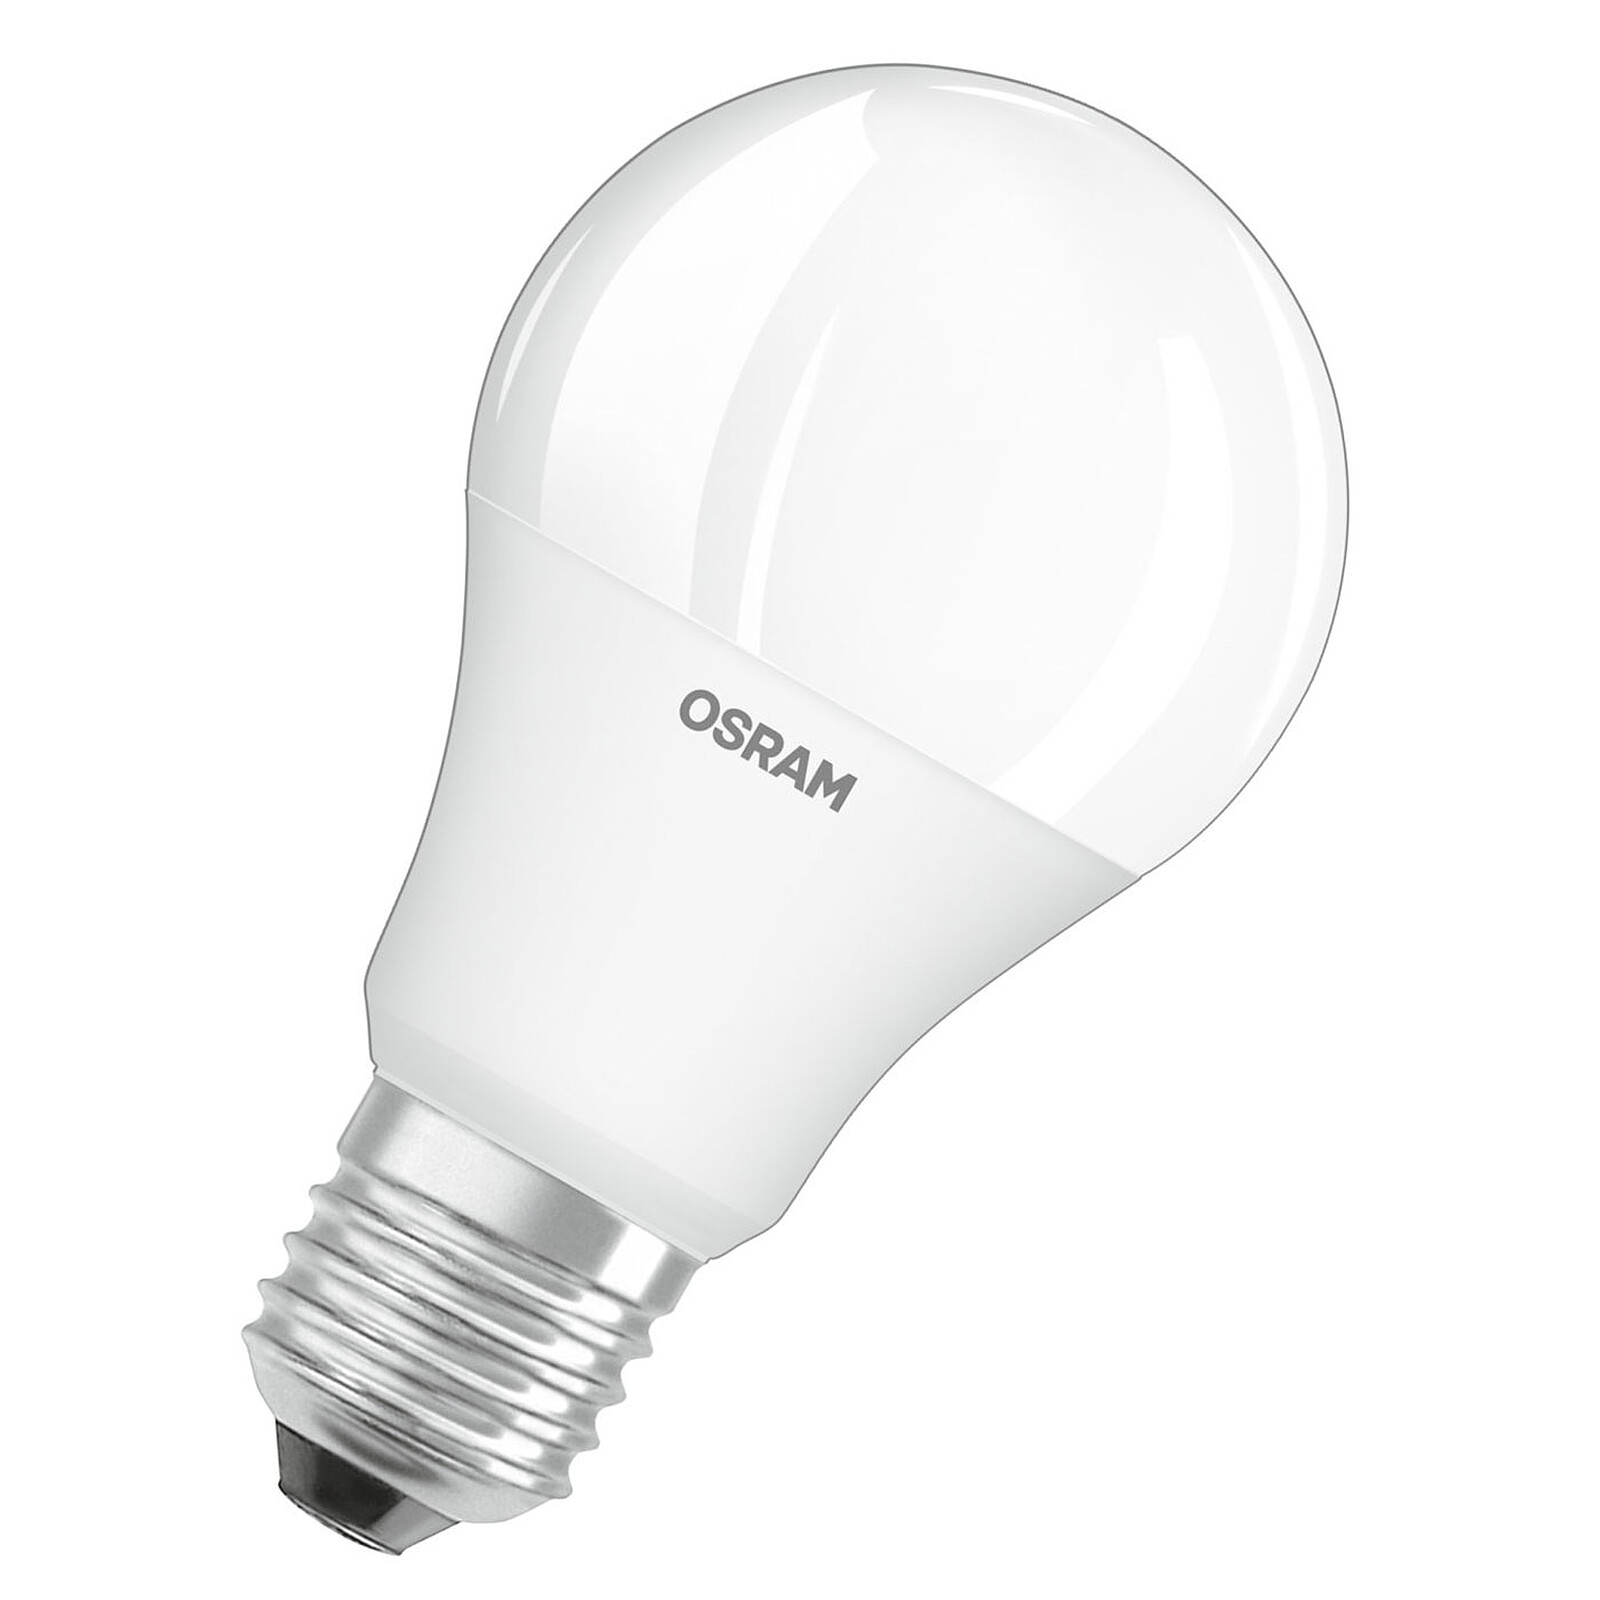 Osram complète son offre de lampes rétrofit Led homologuée